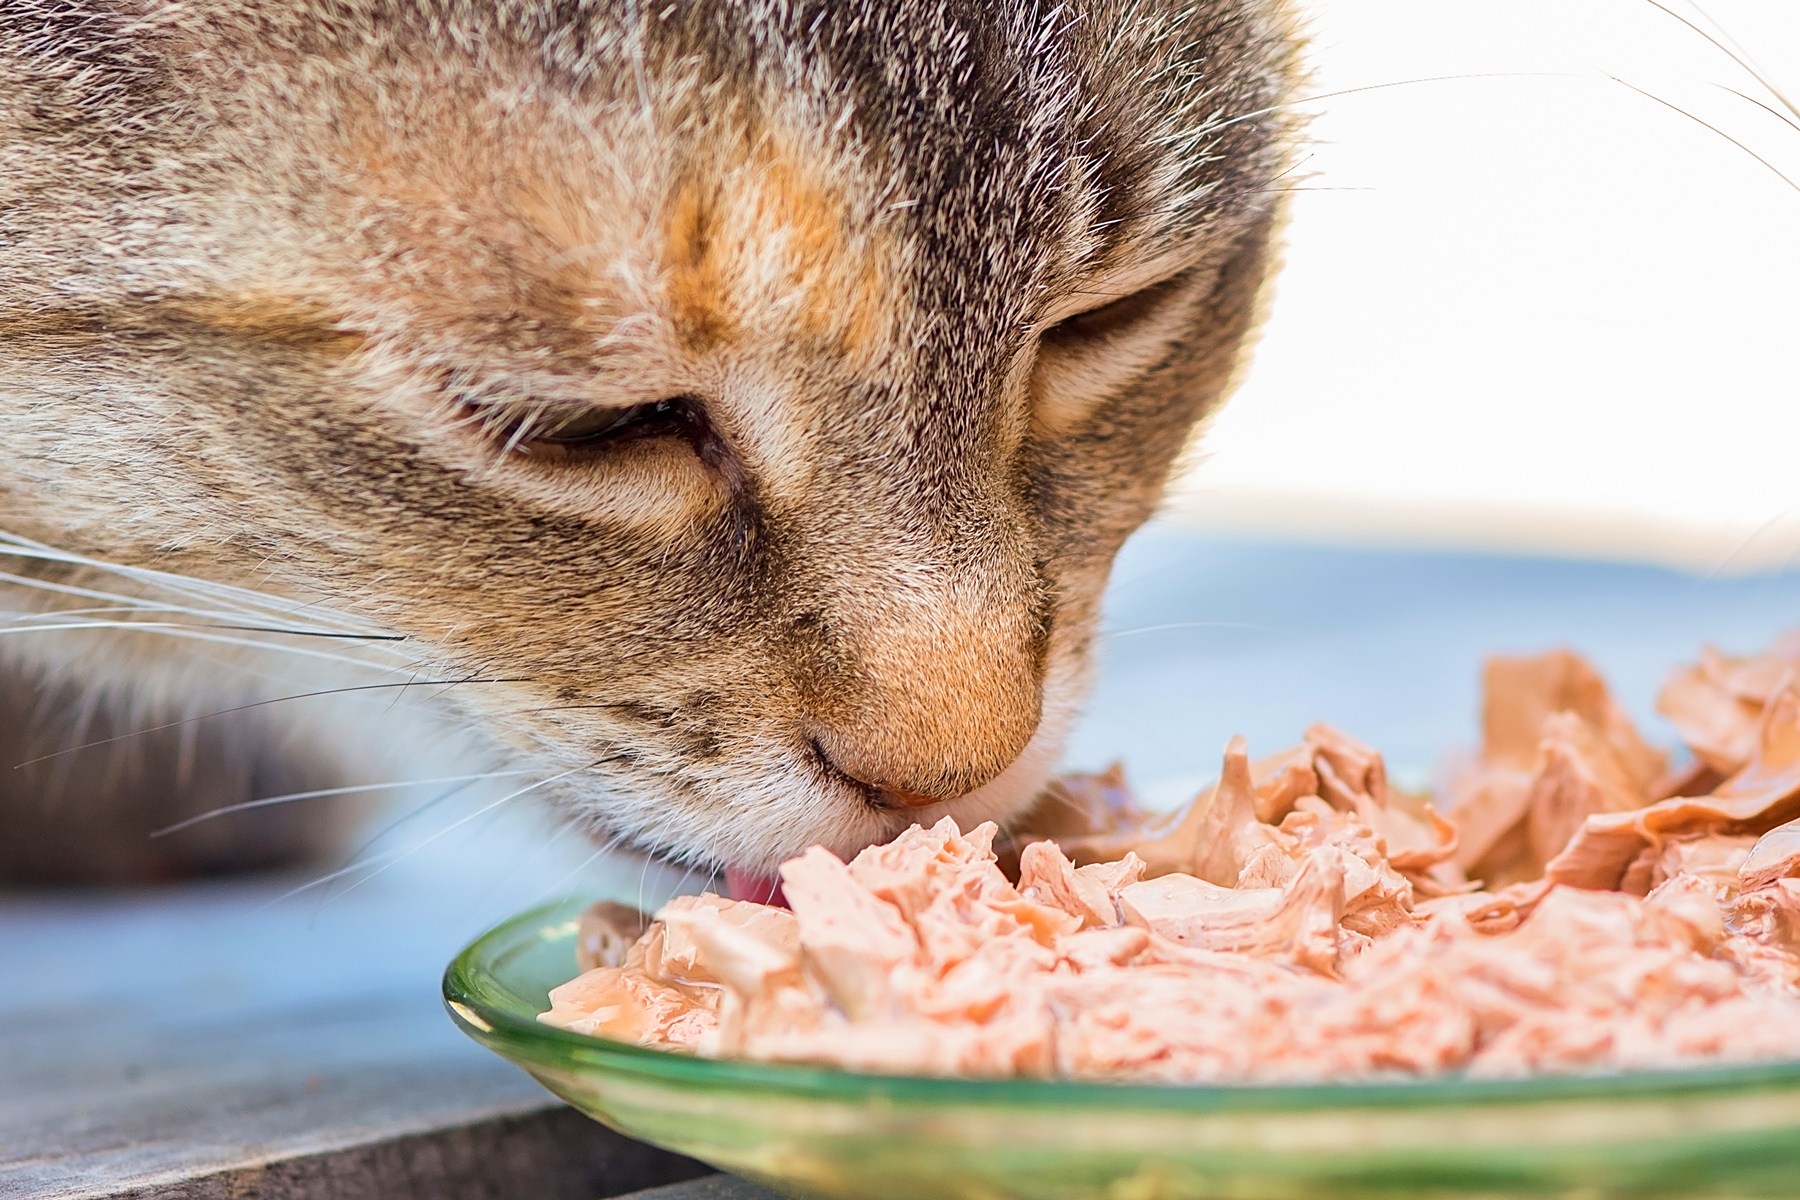 Что ест кошка в домашних условиях